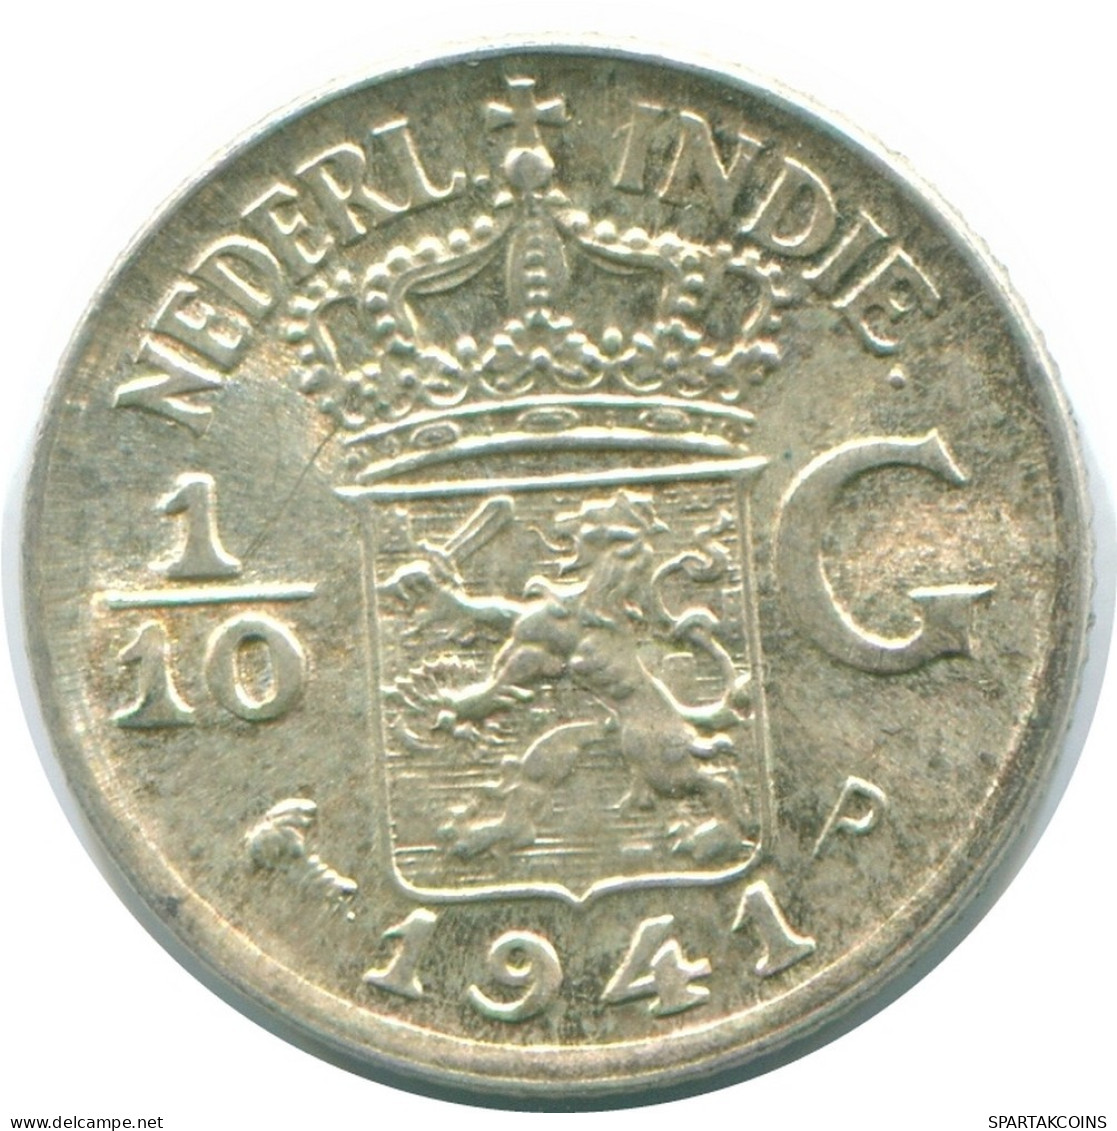 1/10 GULDEN 1941 P NIEDERLANDE OSTINDIEN SILBER Koloniale Münze #NL13762.3.D.A - Niederländisch-Indien